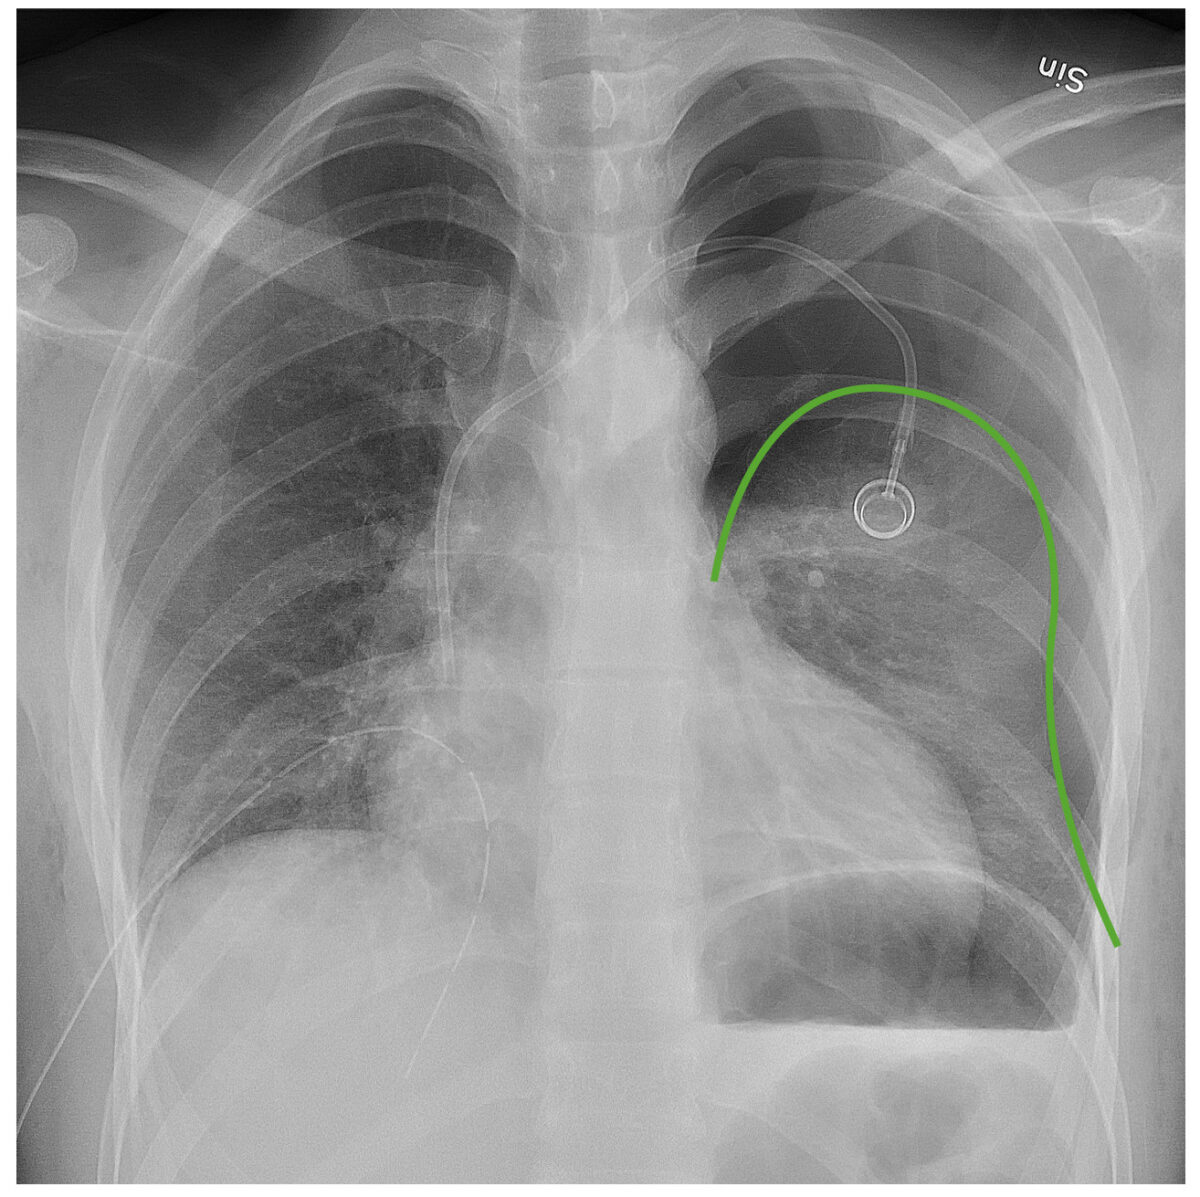 Radiografia de tórax mostrando pneumotórax esquerdo